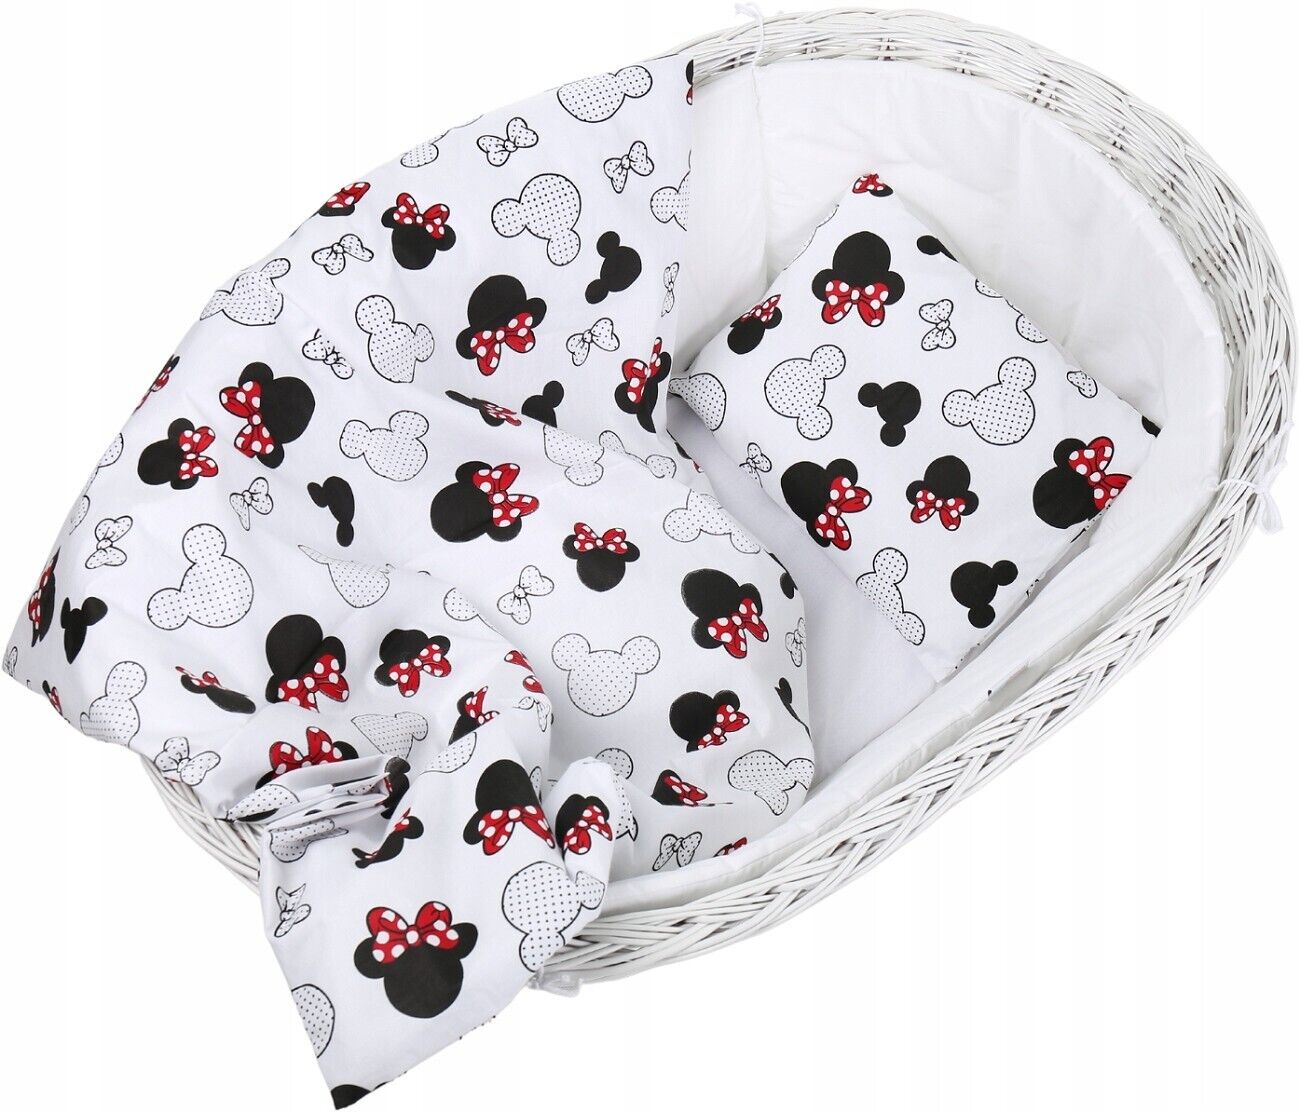 Baby bedding set 5pc nursery cotton pillow duvet bumper 70x80cm Minnie Mouse